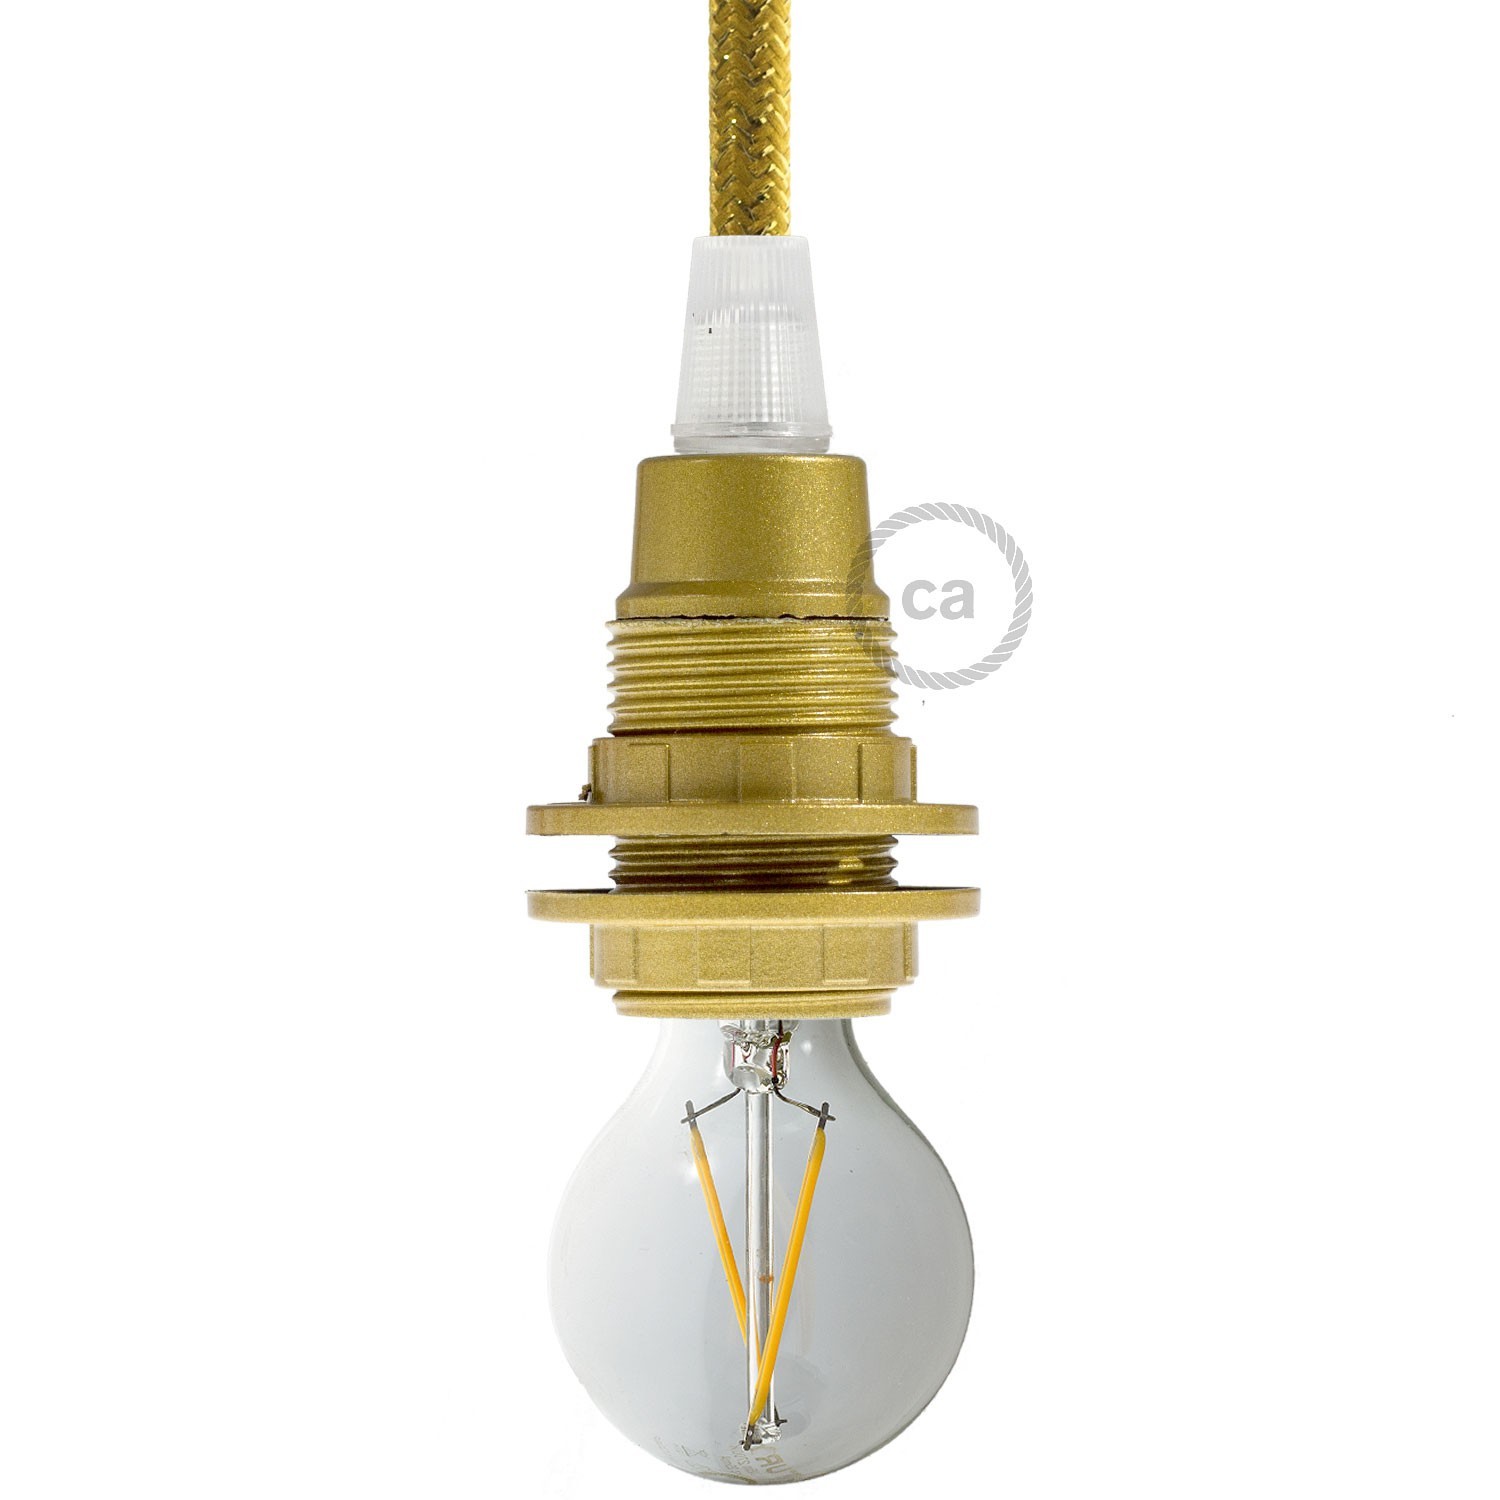 Double ferrule bakelite E14 lamp holder kit for lampshade